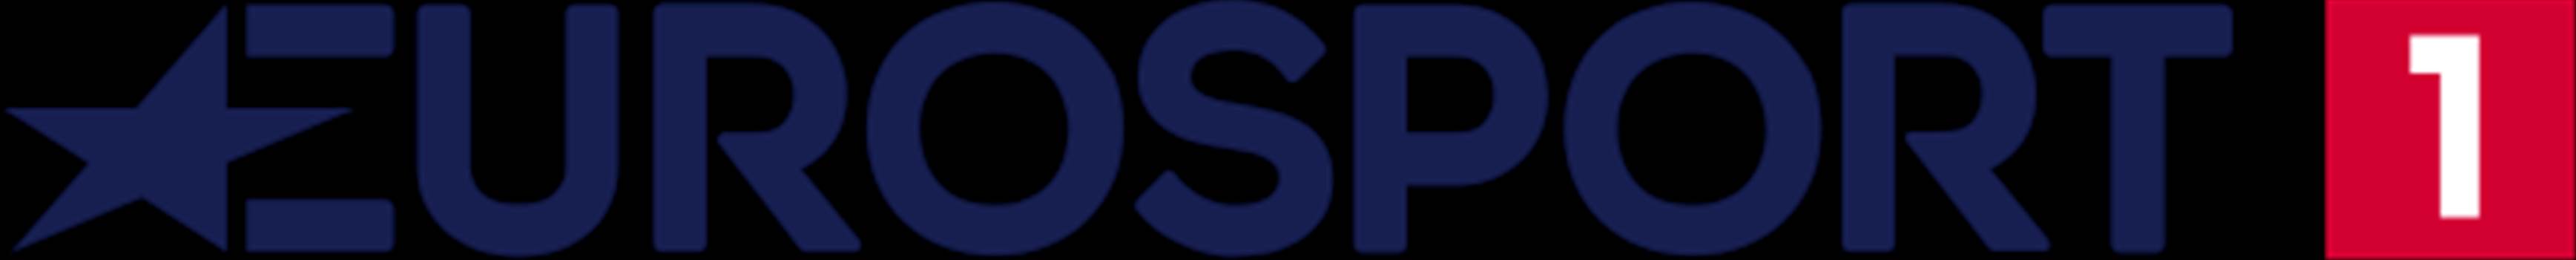 eurosport_1_es_logo.png by otan